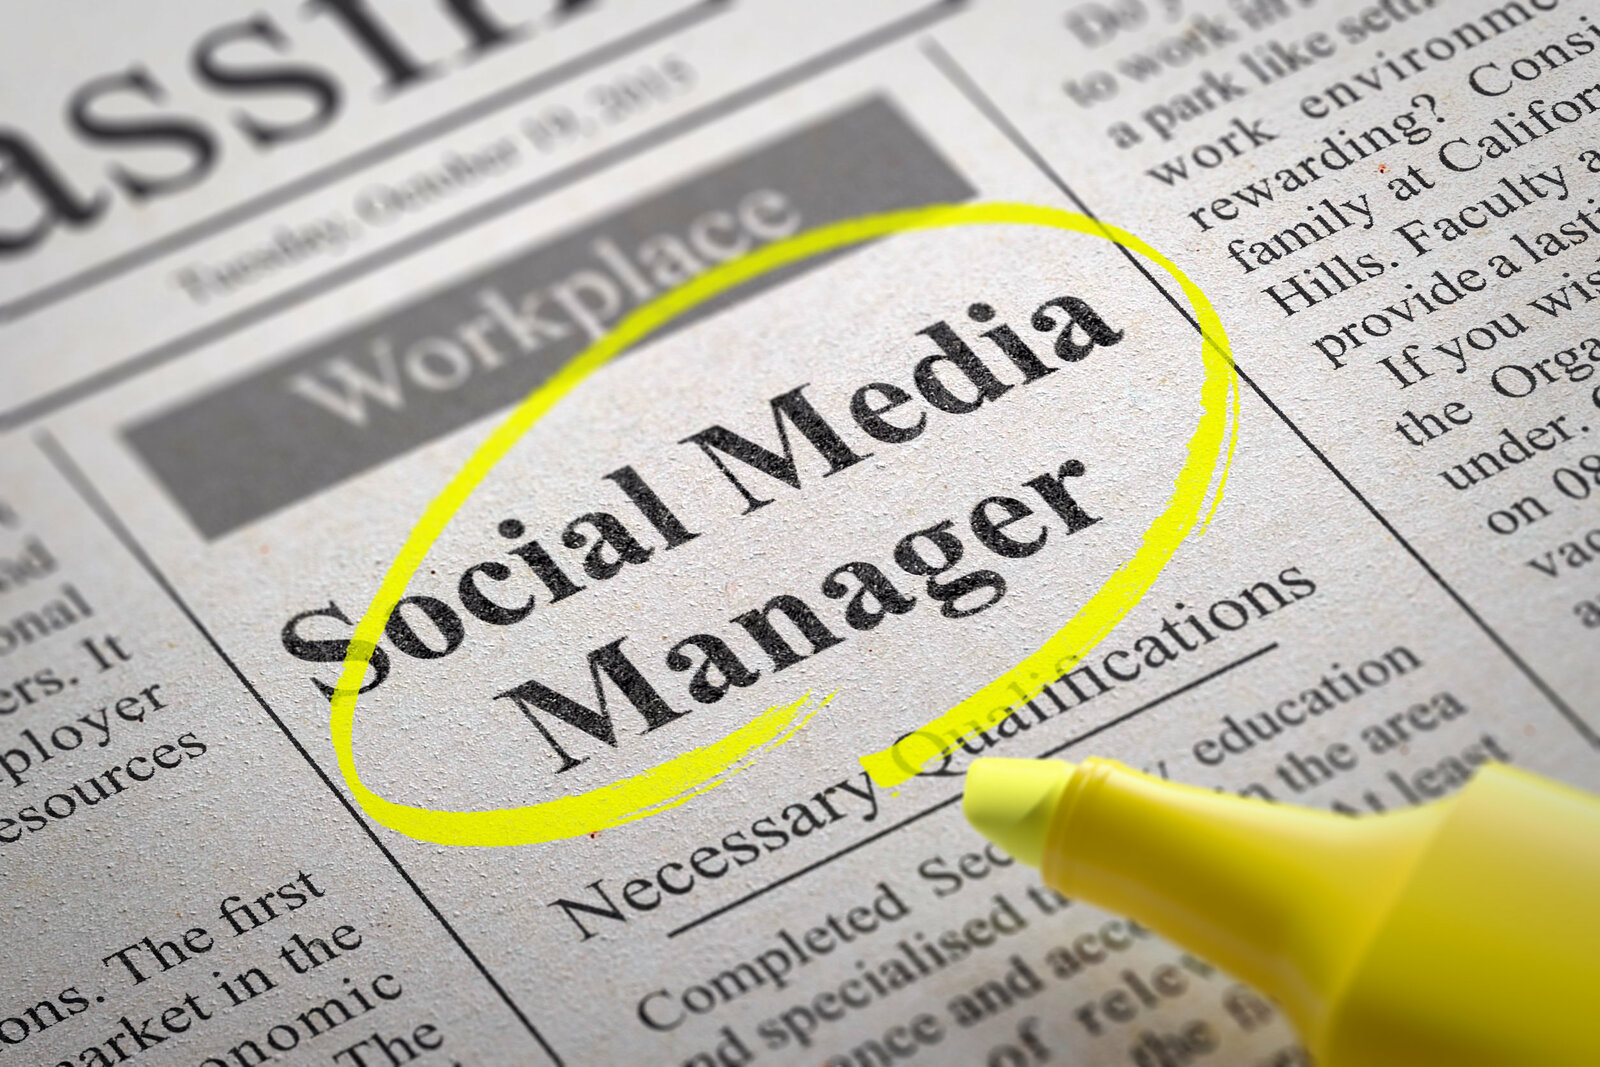 Social Media Manager dans les offres d'emploi des journaux.